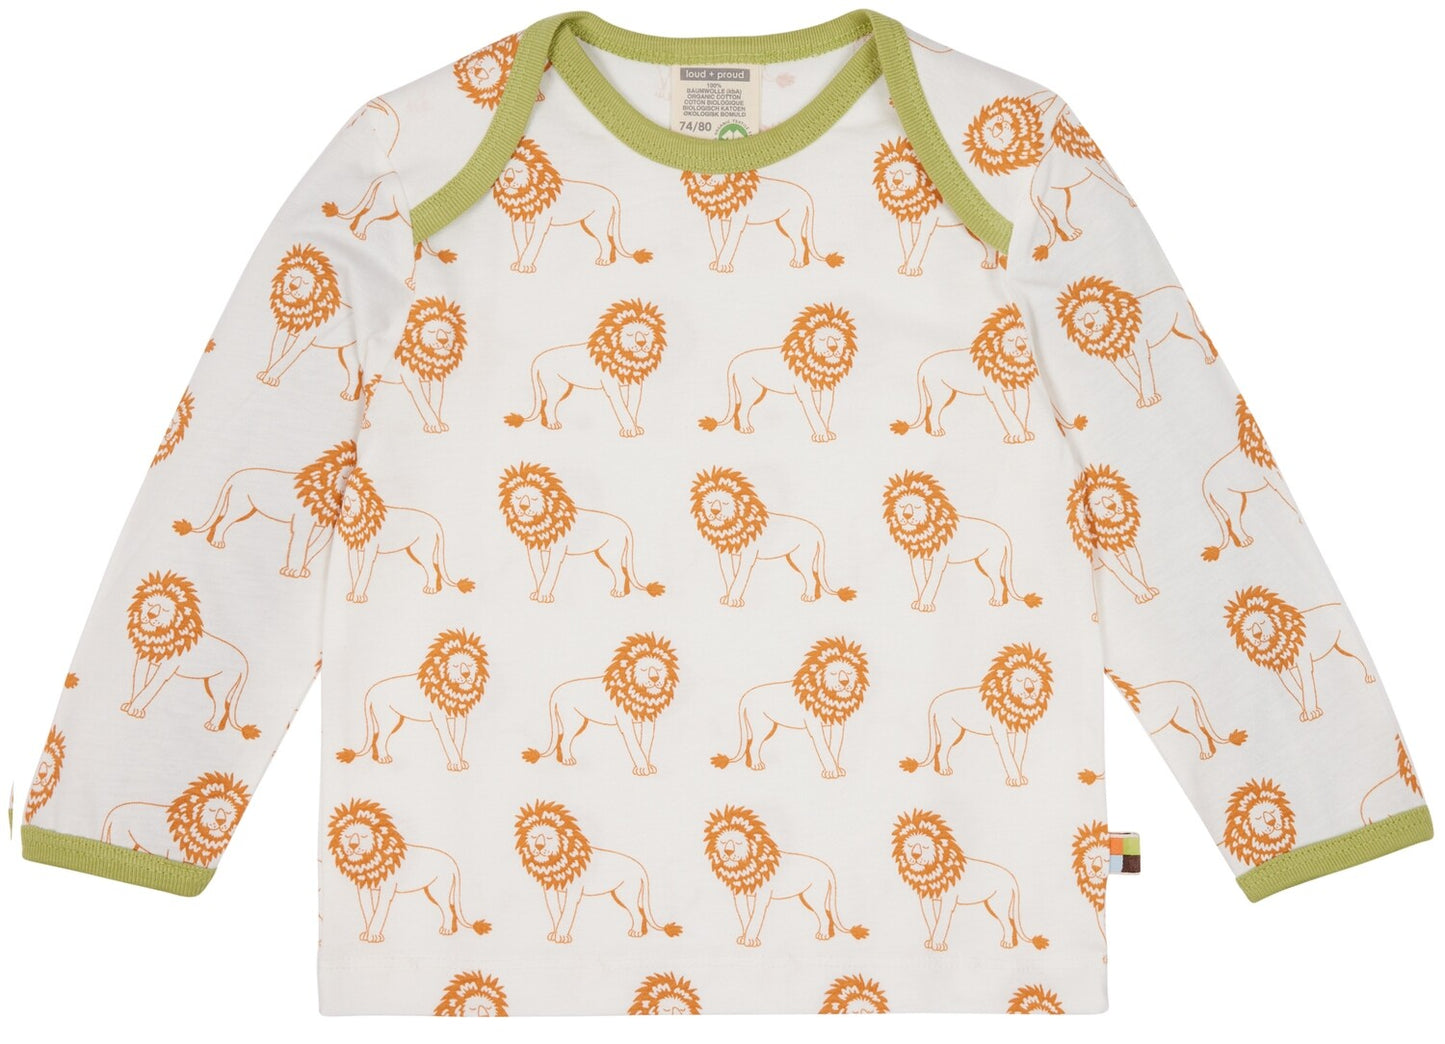 vaikiški marškinėliai ilgomis rankovėmis, baltis u oranžiniais liūtais ir žaliomis detalėmis.